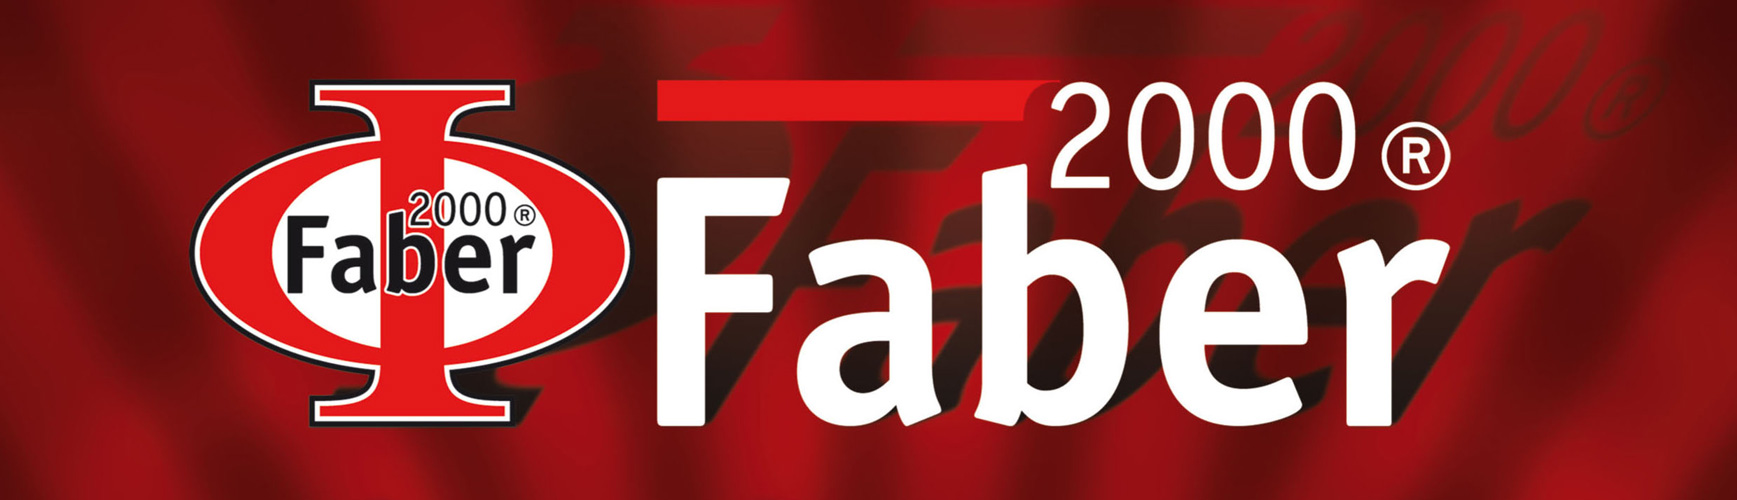 Catálogo de Compresores Faber 2000